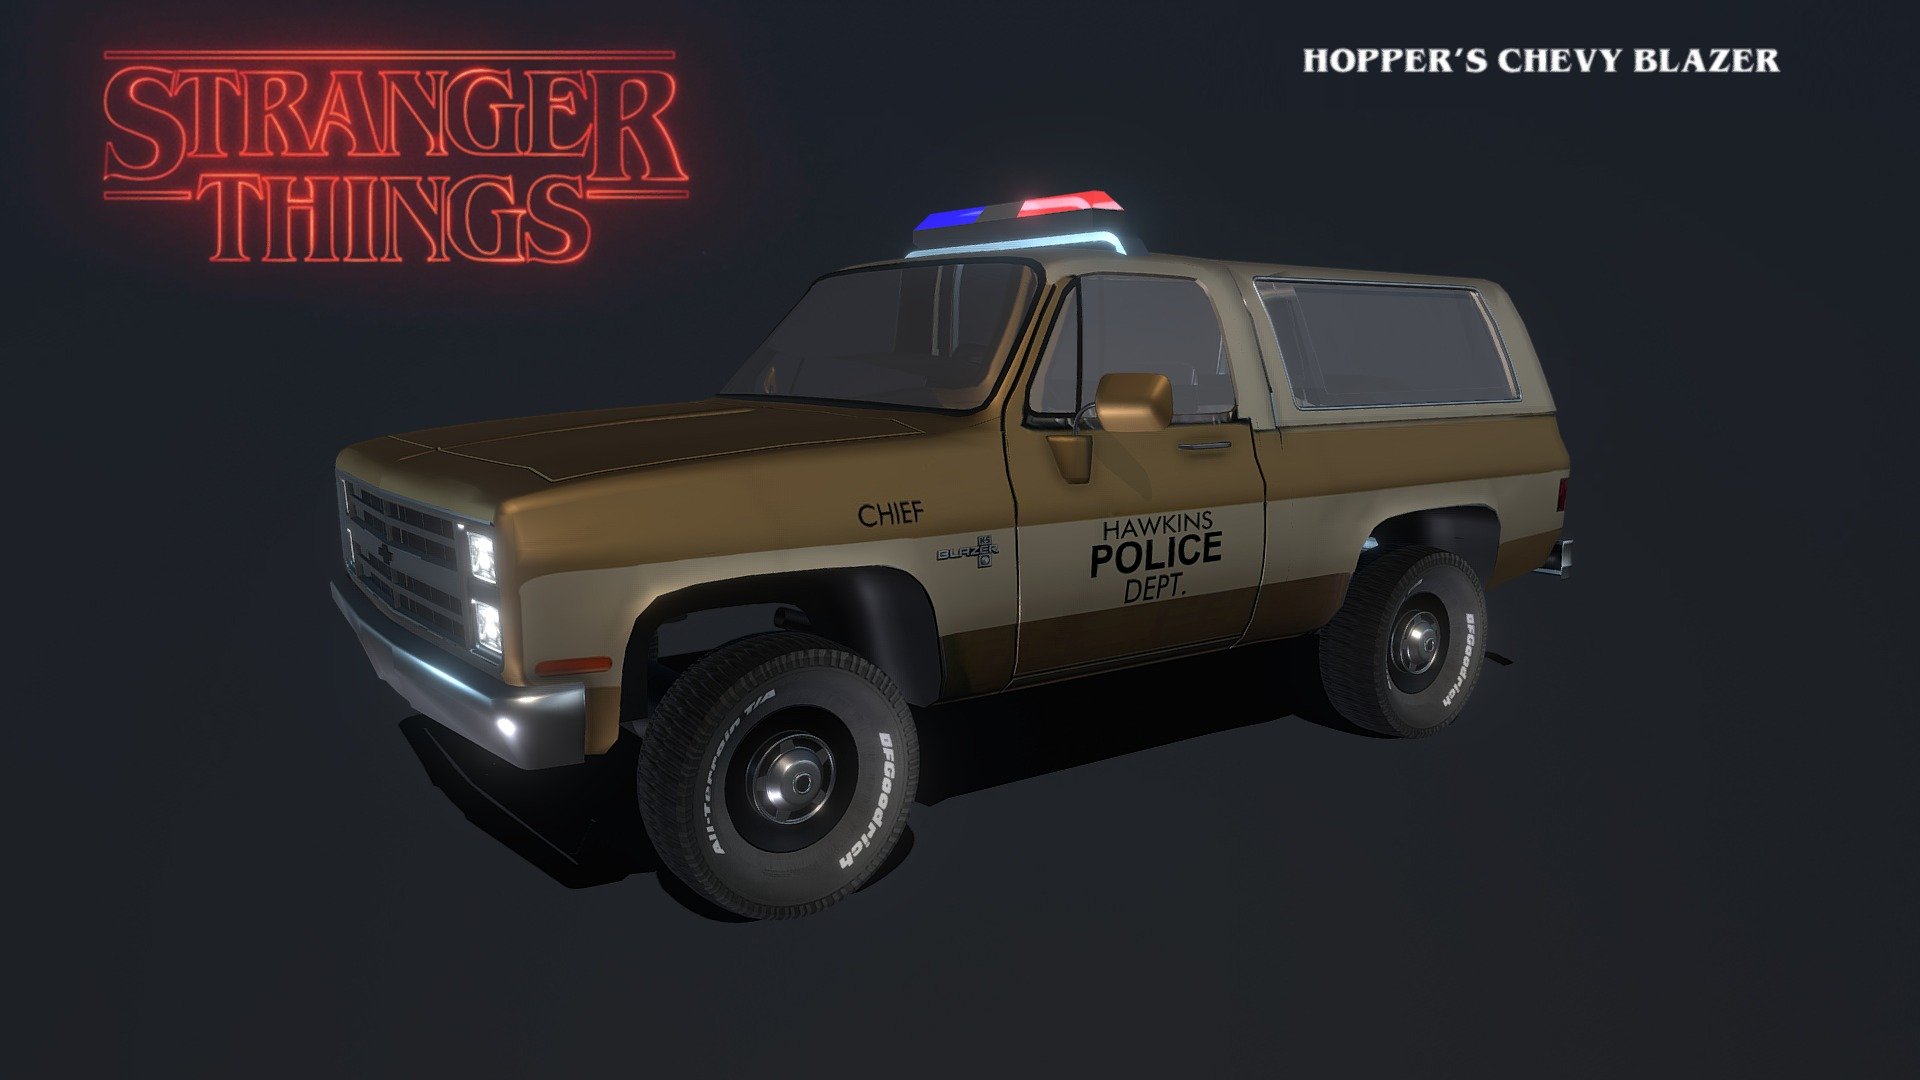 Hoppers infamous Chevy Blazer from Stranger Things. still a work in progress, All modeled in 3DS Max. 

Thanks for looking :) - Hoppers Chevy Blazer Truck (StrangerThings) - 3D model by paulelderdesign 3d model